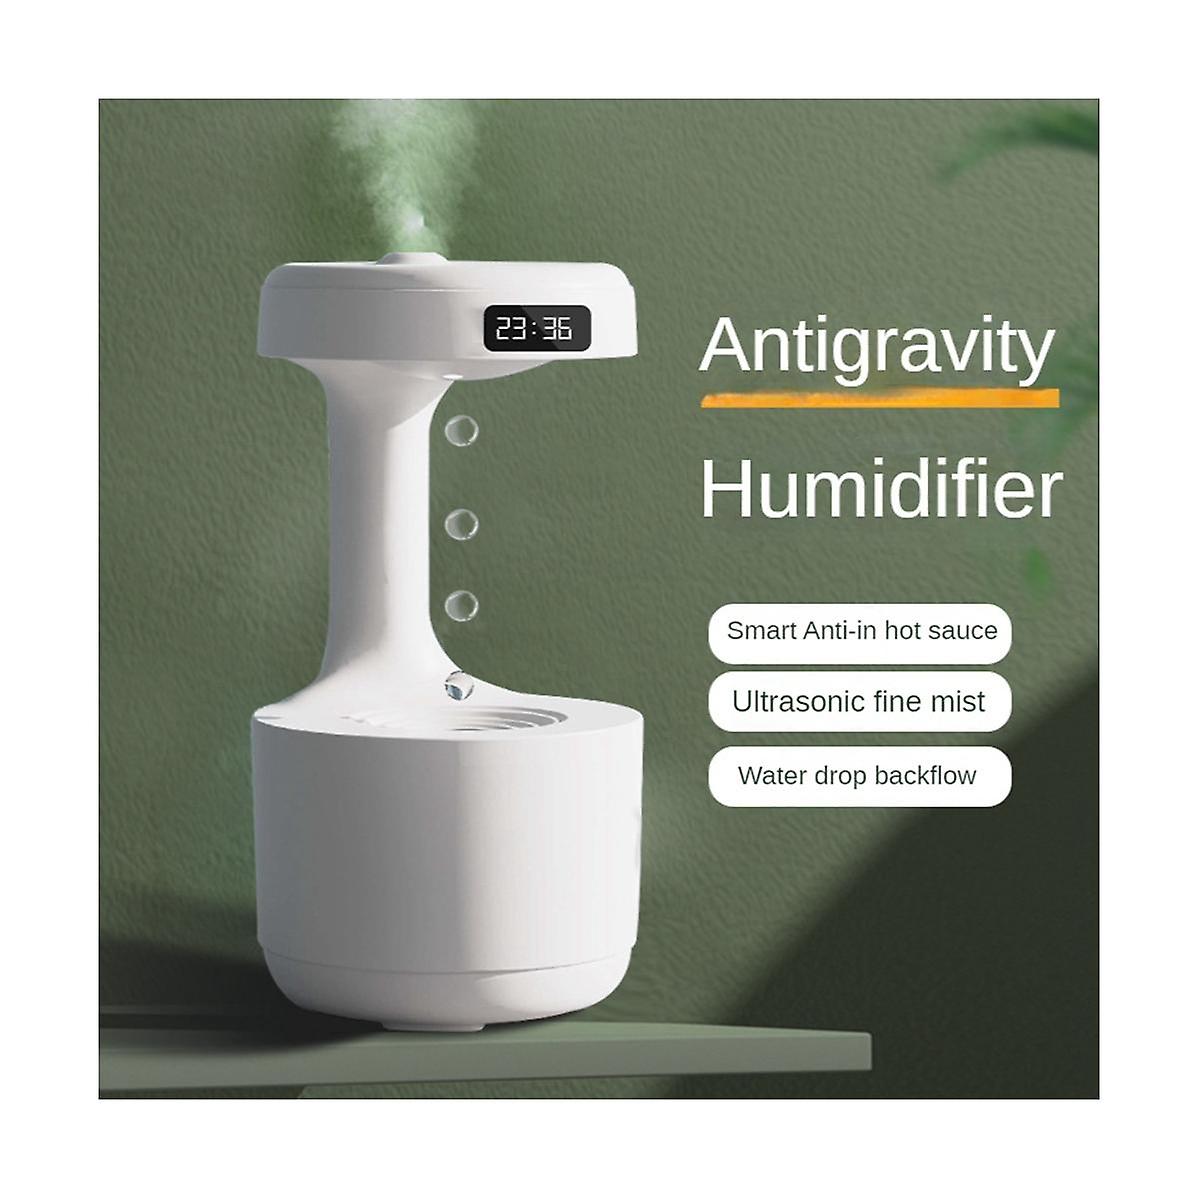 Anti-Gravity Humidifier – ShopNomad